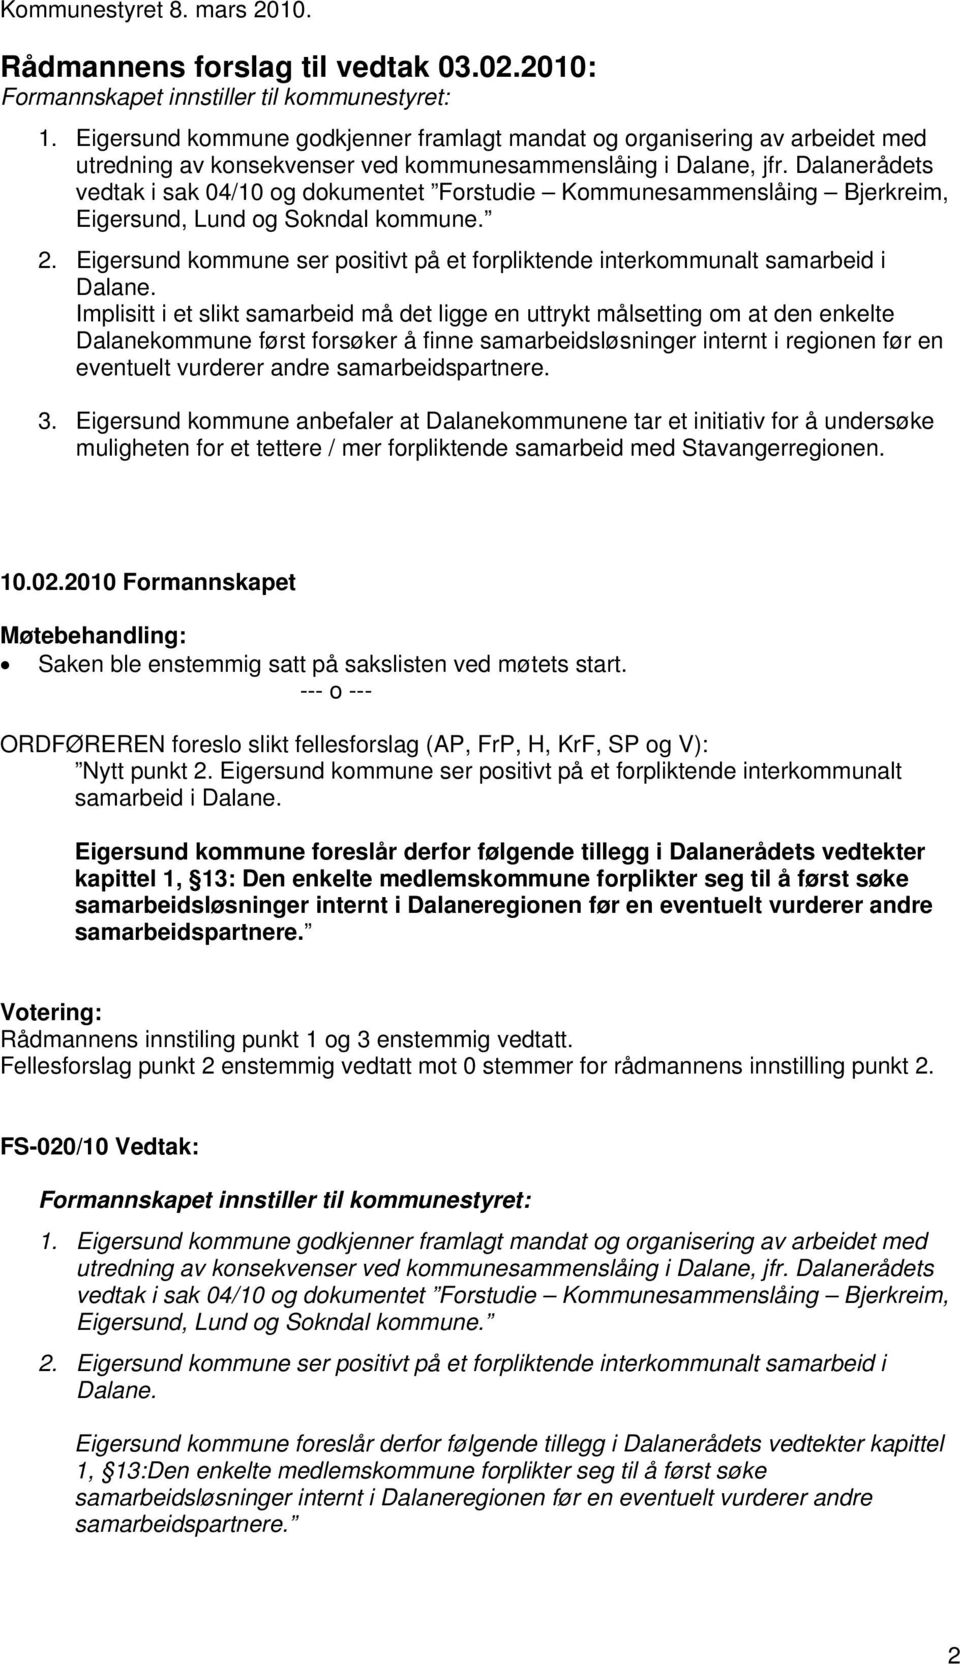 Dalanerådets vedtak i sak 04/10 og dokumentet Forstudie Kommunesammenslåing Bjerkreim, Eigersund, Lund og Sokndal kommune. Dalane.